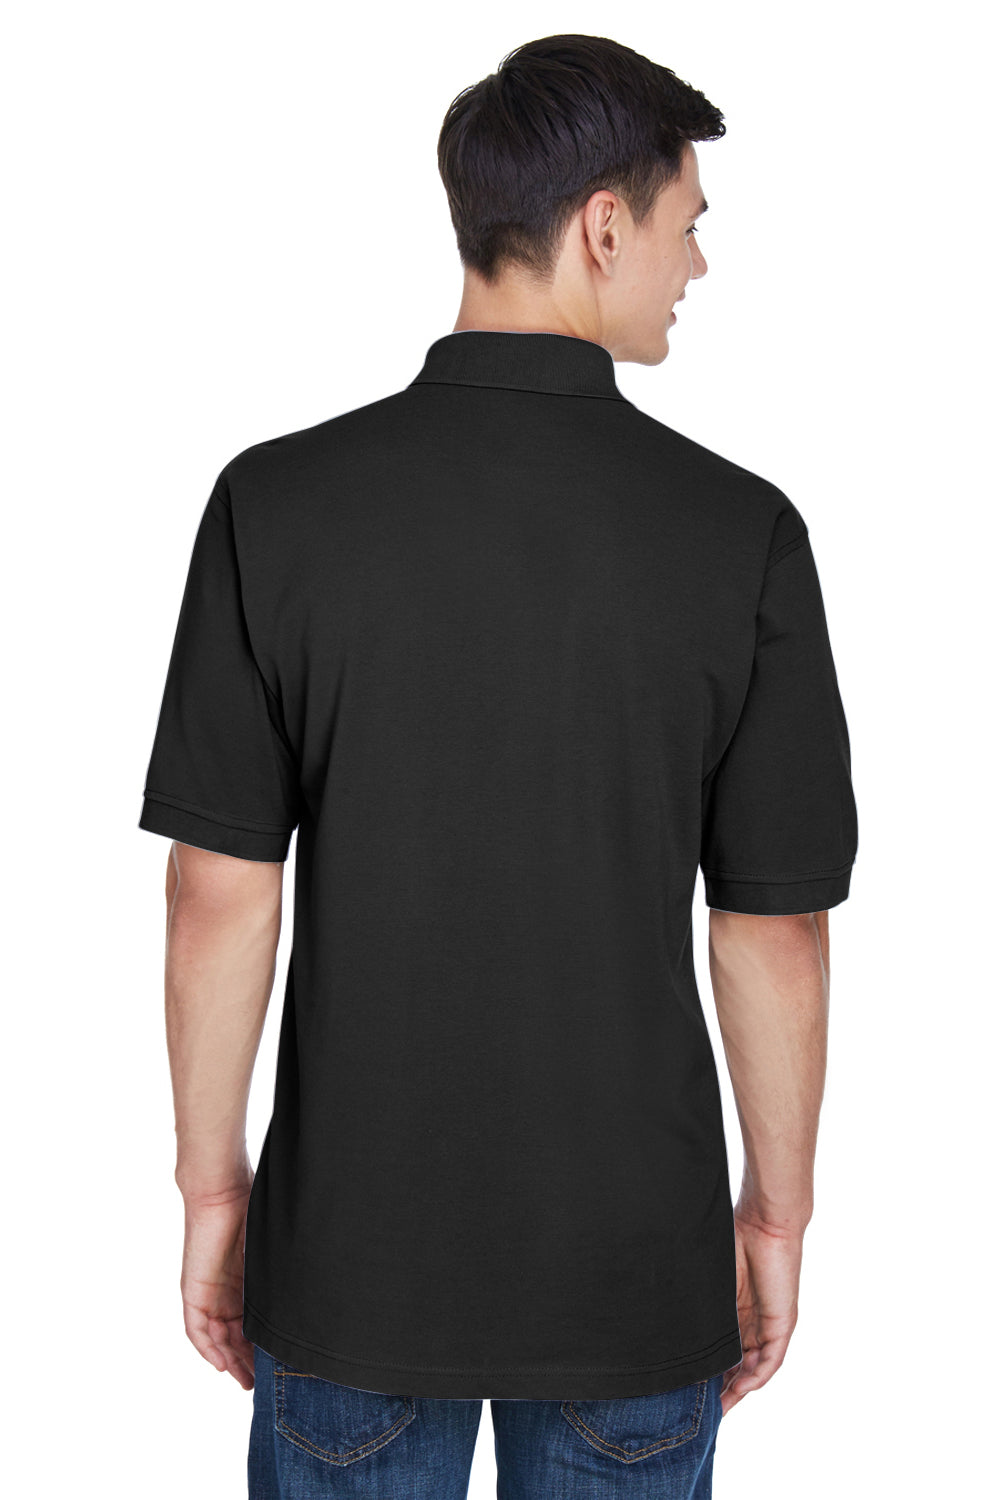 Harriton M265 Mens Easy Blend Wrinkle Resistant Short Sleeve Polo Shirt Black Back